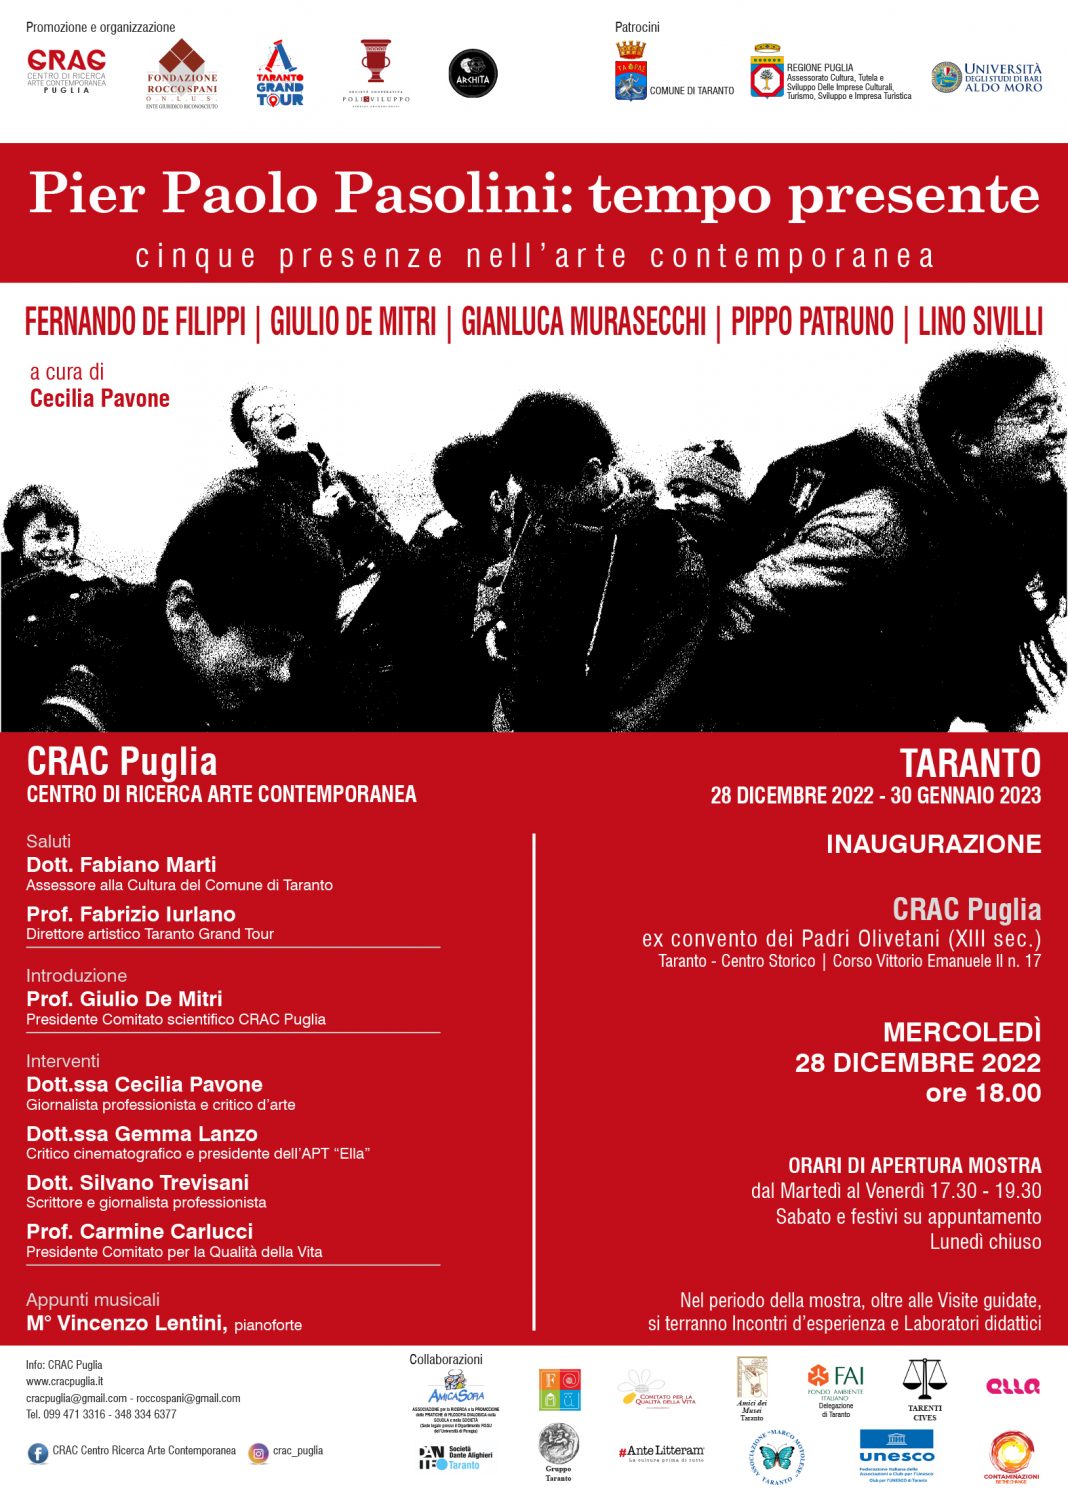 Pier Paolo Pasolini: tempo presente. Cinque presenze nell’arte contemporaneahttps://www.exibart.com/repository/media/formidable/11/img/c2f/MANIFESTO-1068x1495.jpg